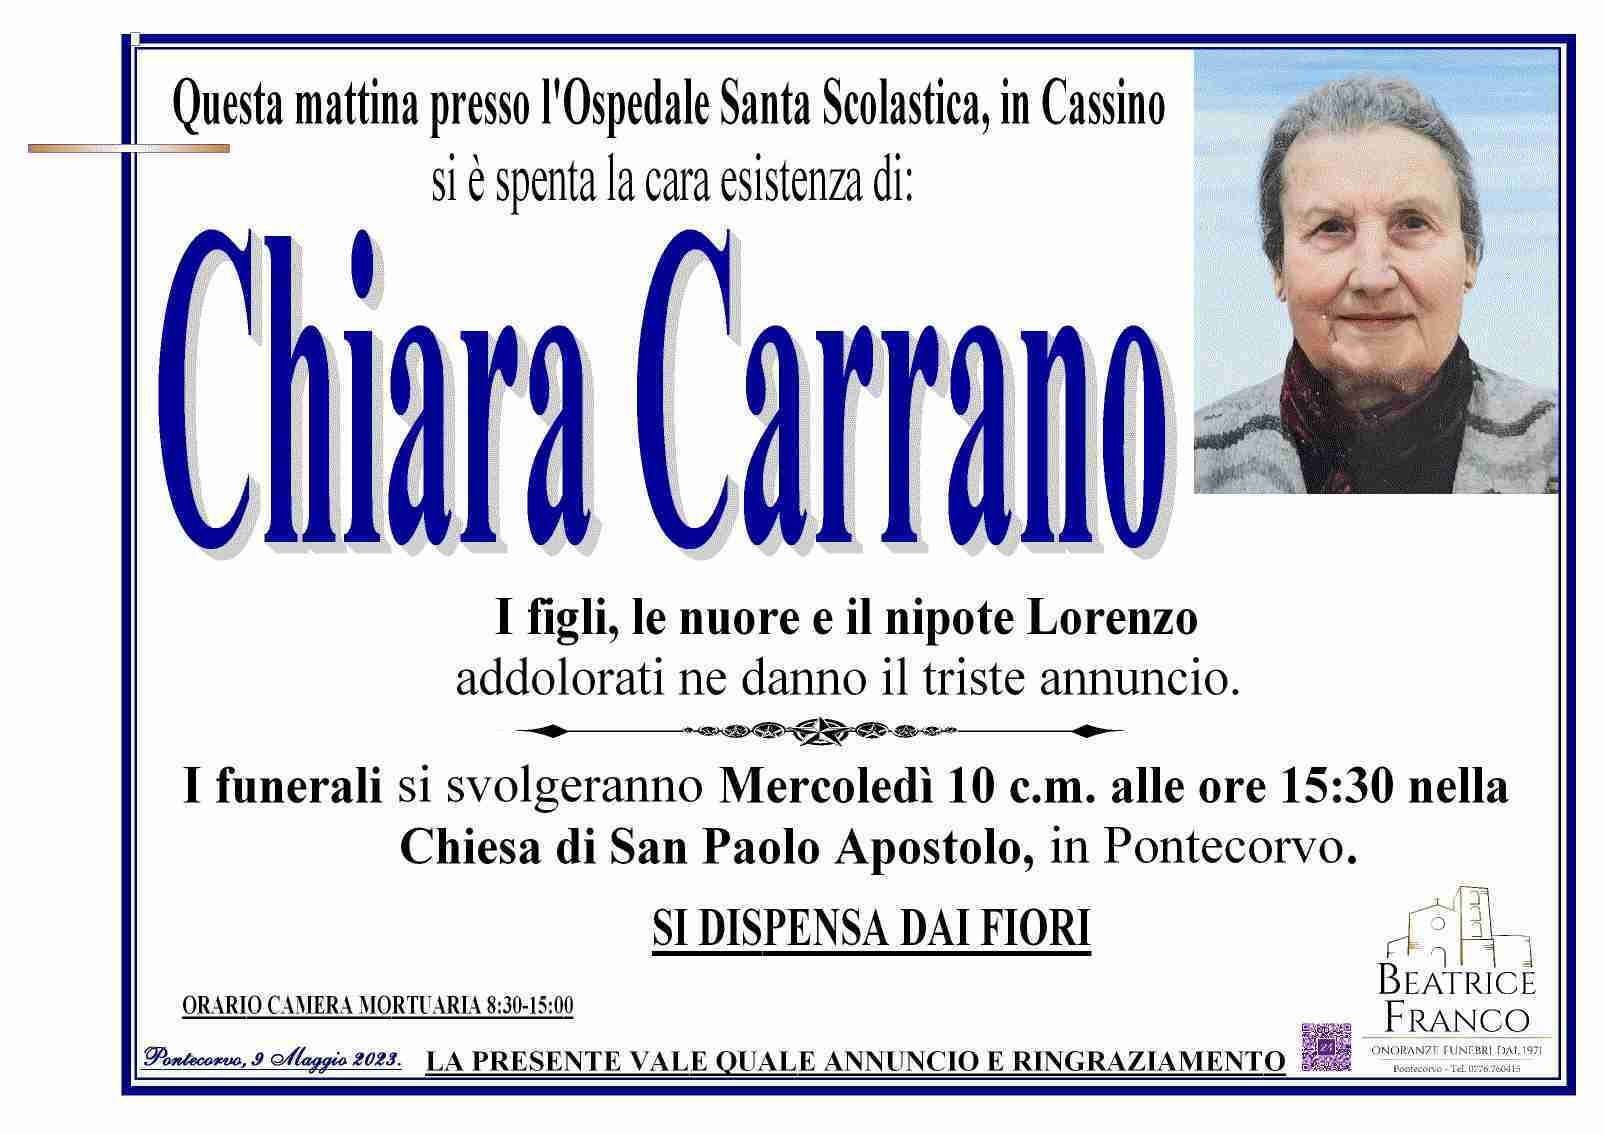 Chiara Carrano